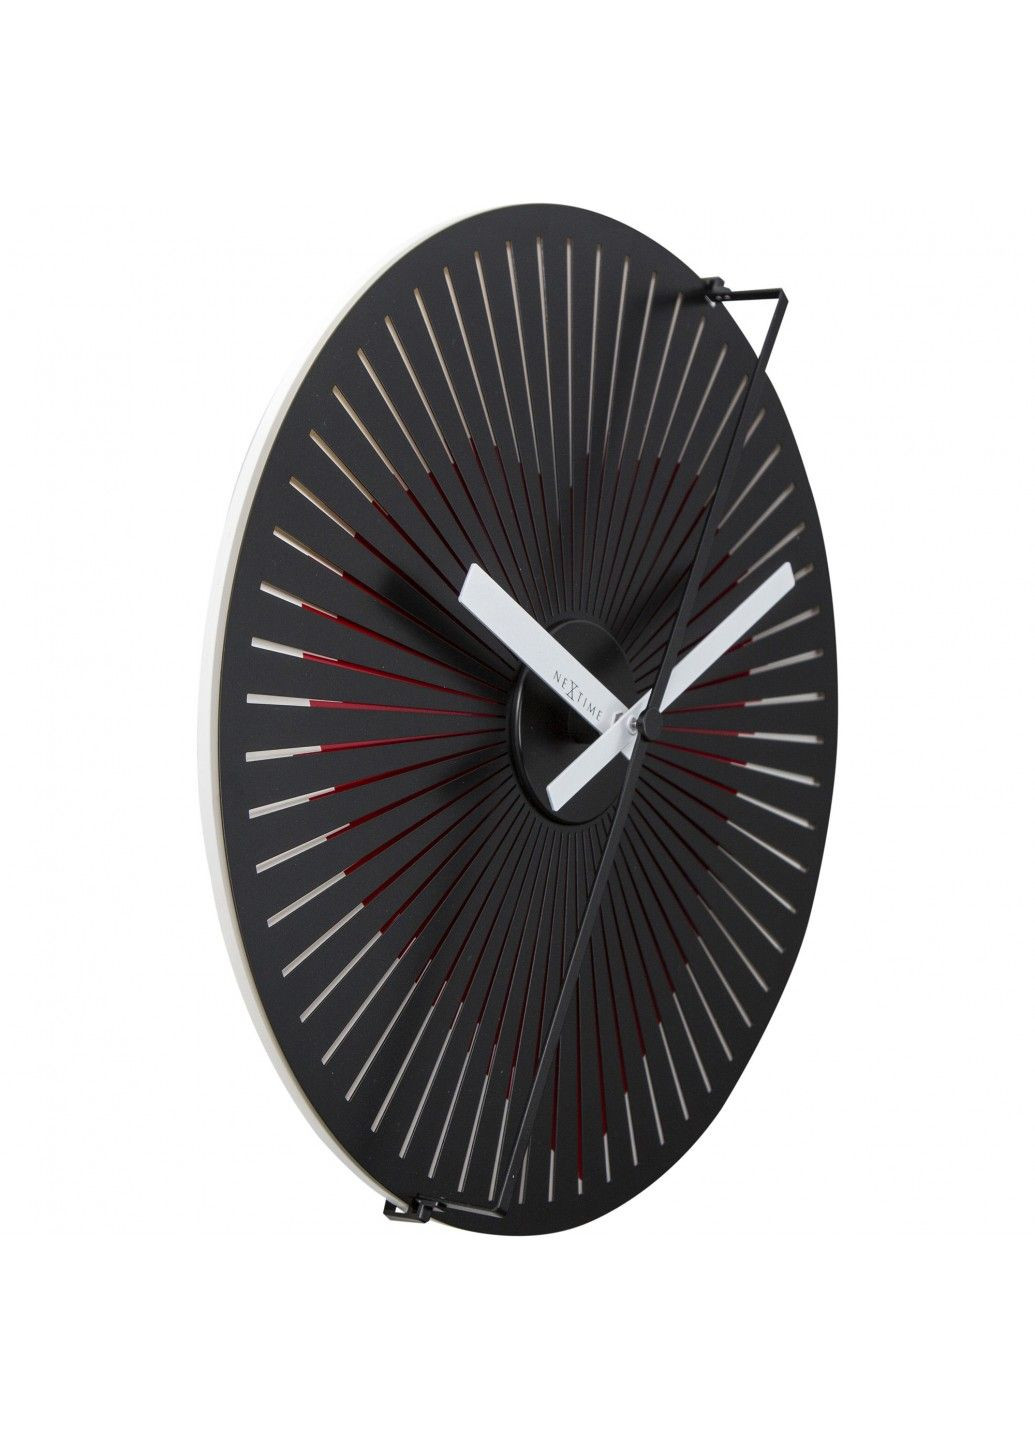 Настінний годинники; динамічний малюнок; "Motion Clock Heart" ø30 см NeXtime (290185928)